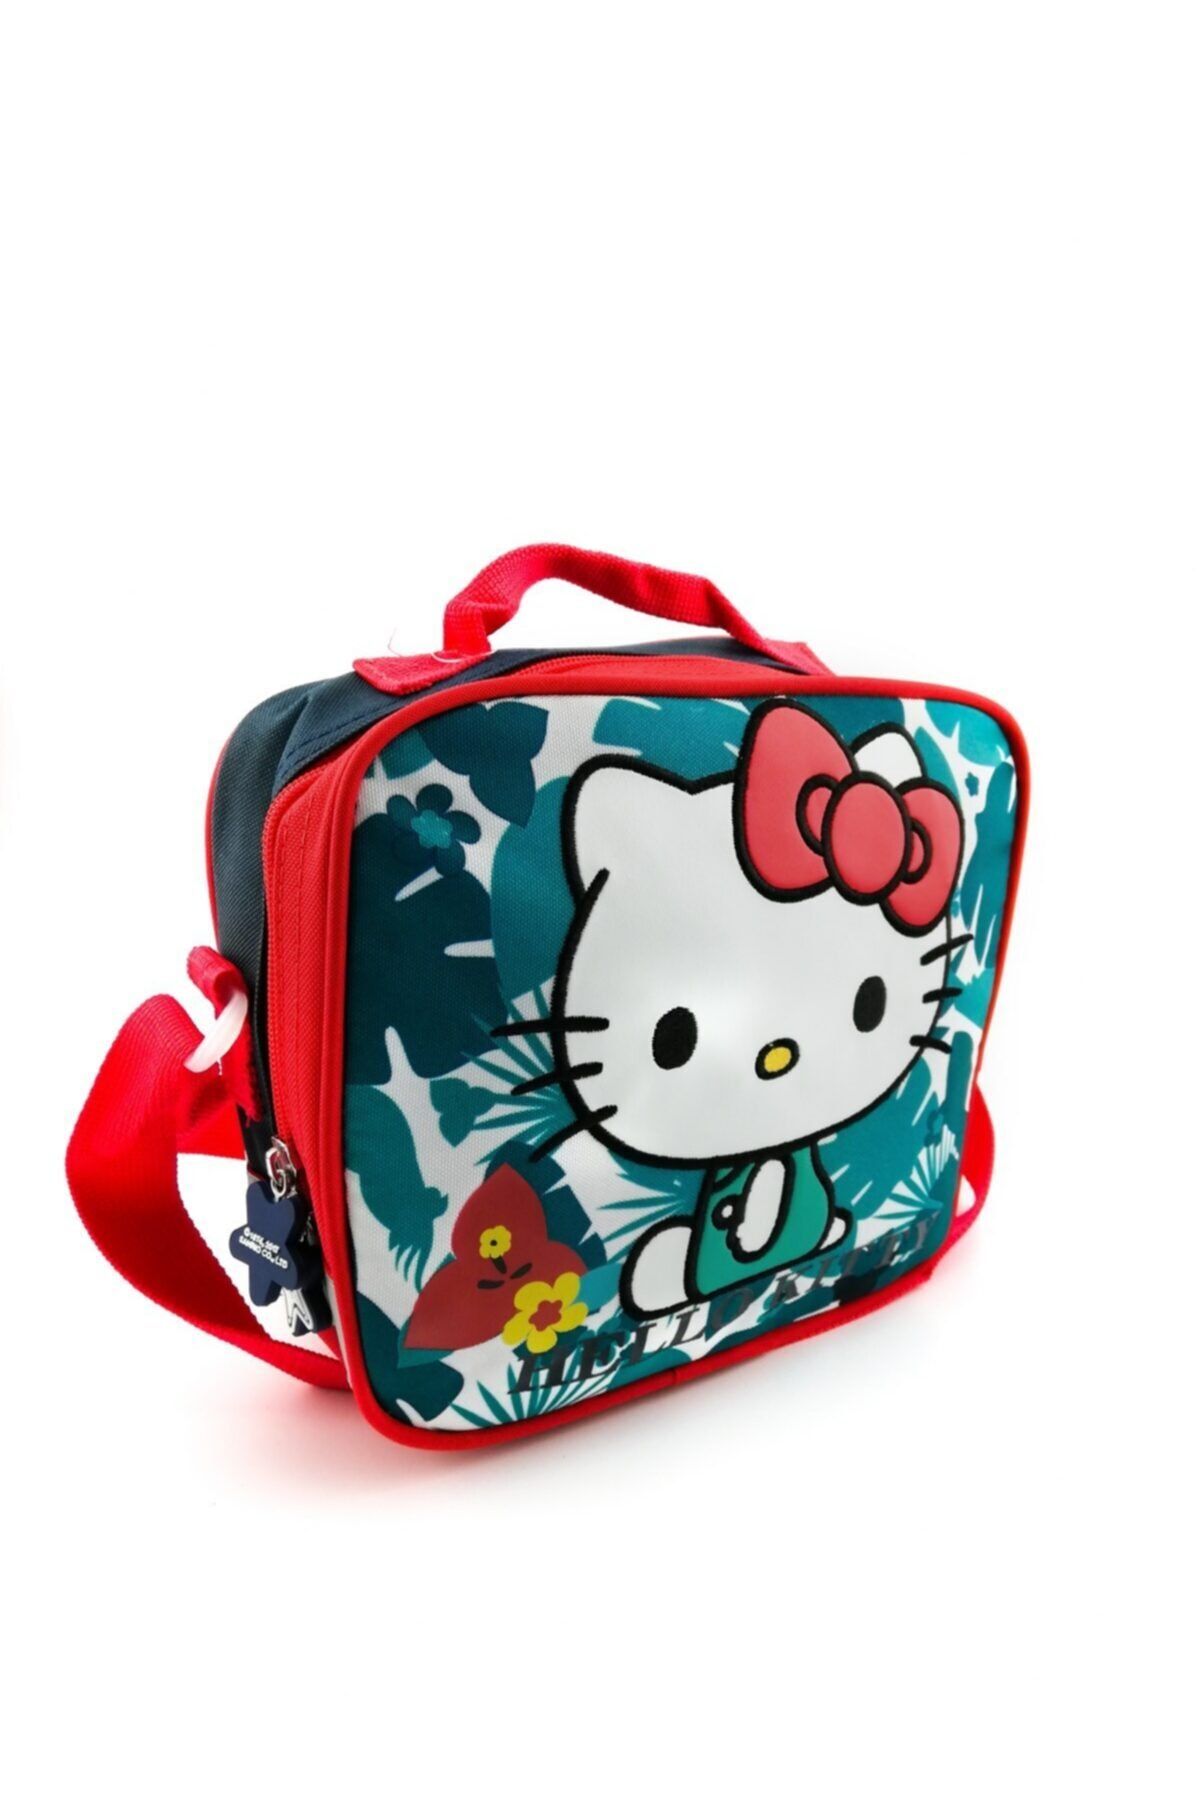 Hakan Çanta Hello Kitty Karakterli Beslenme Çantası